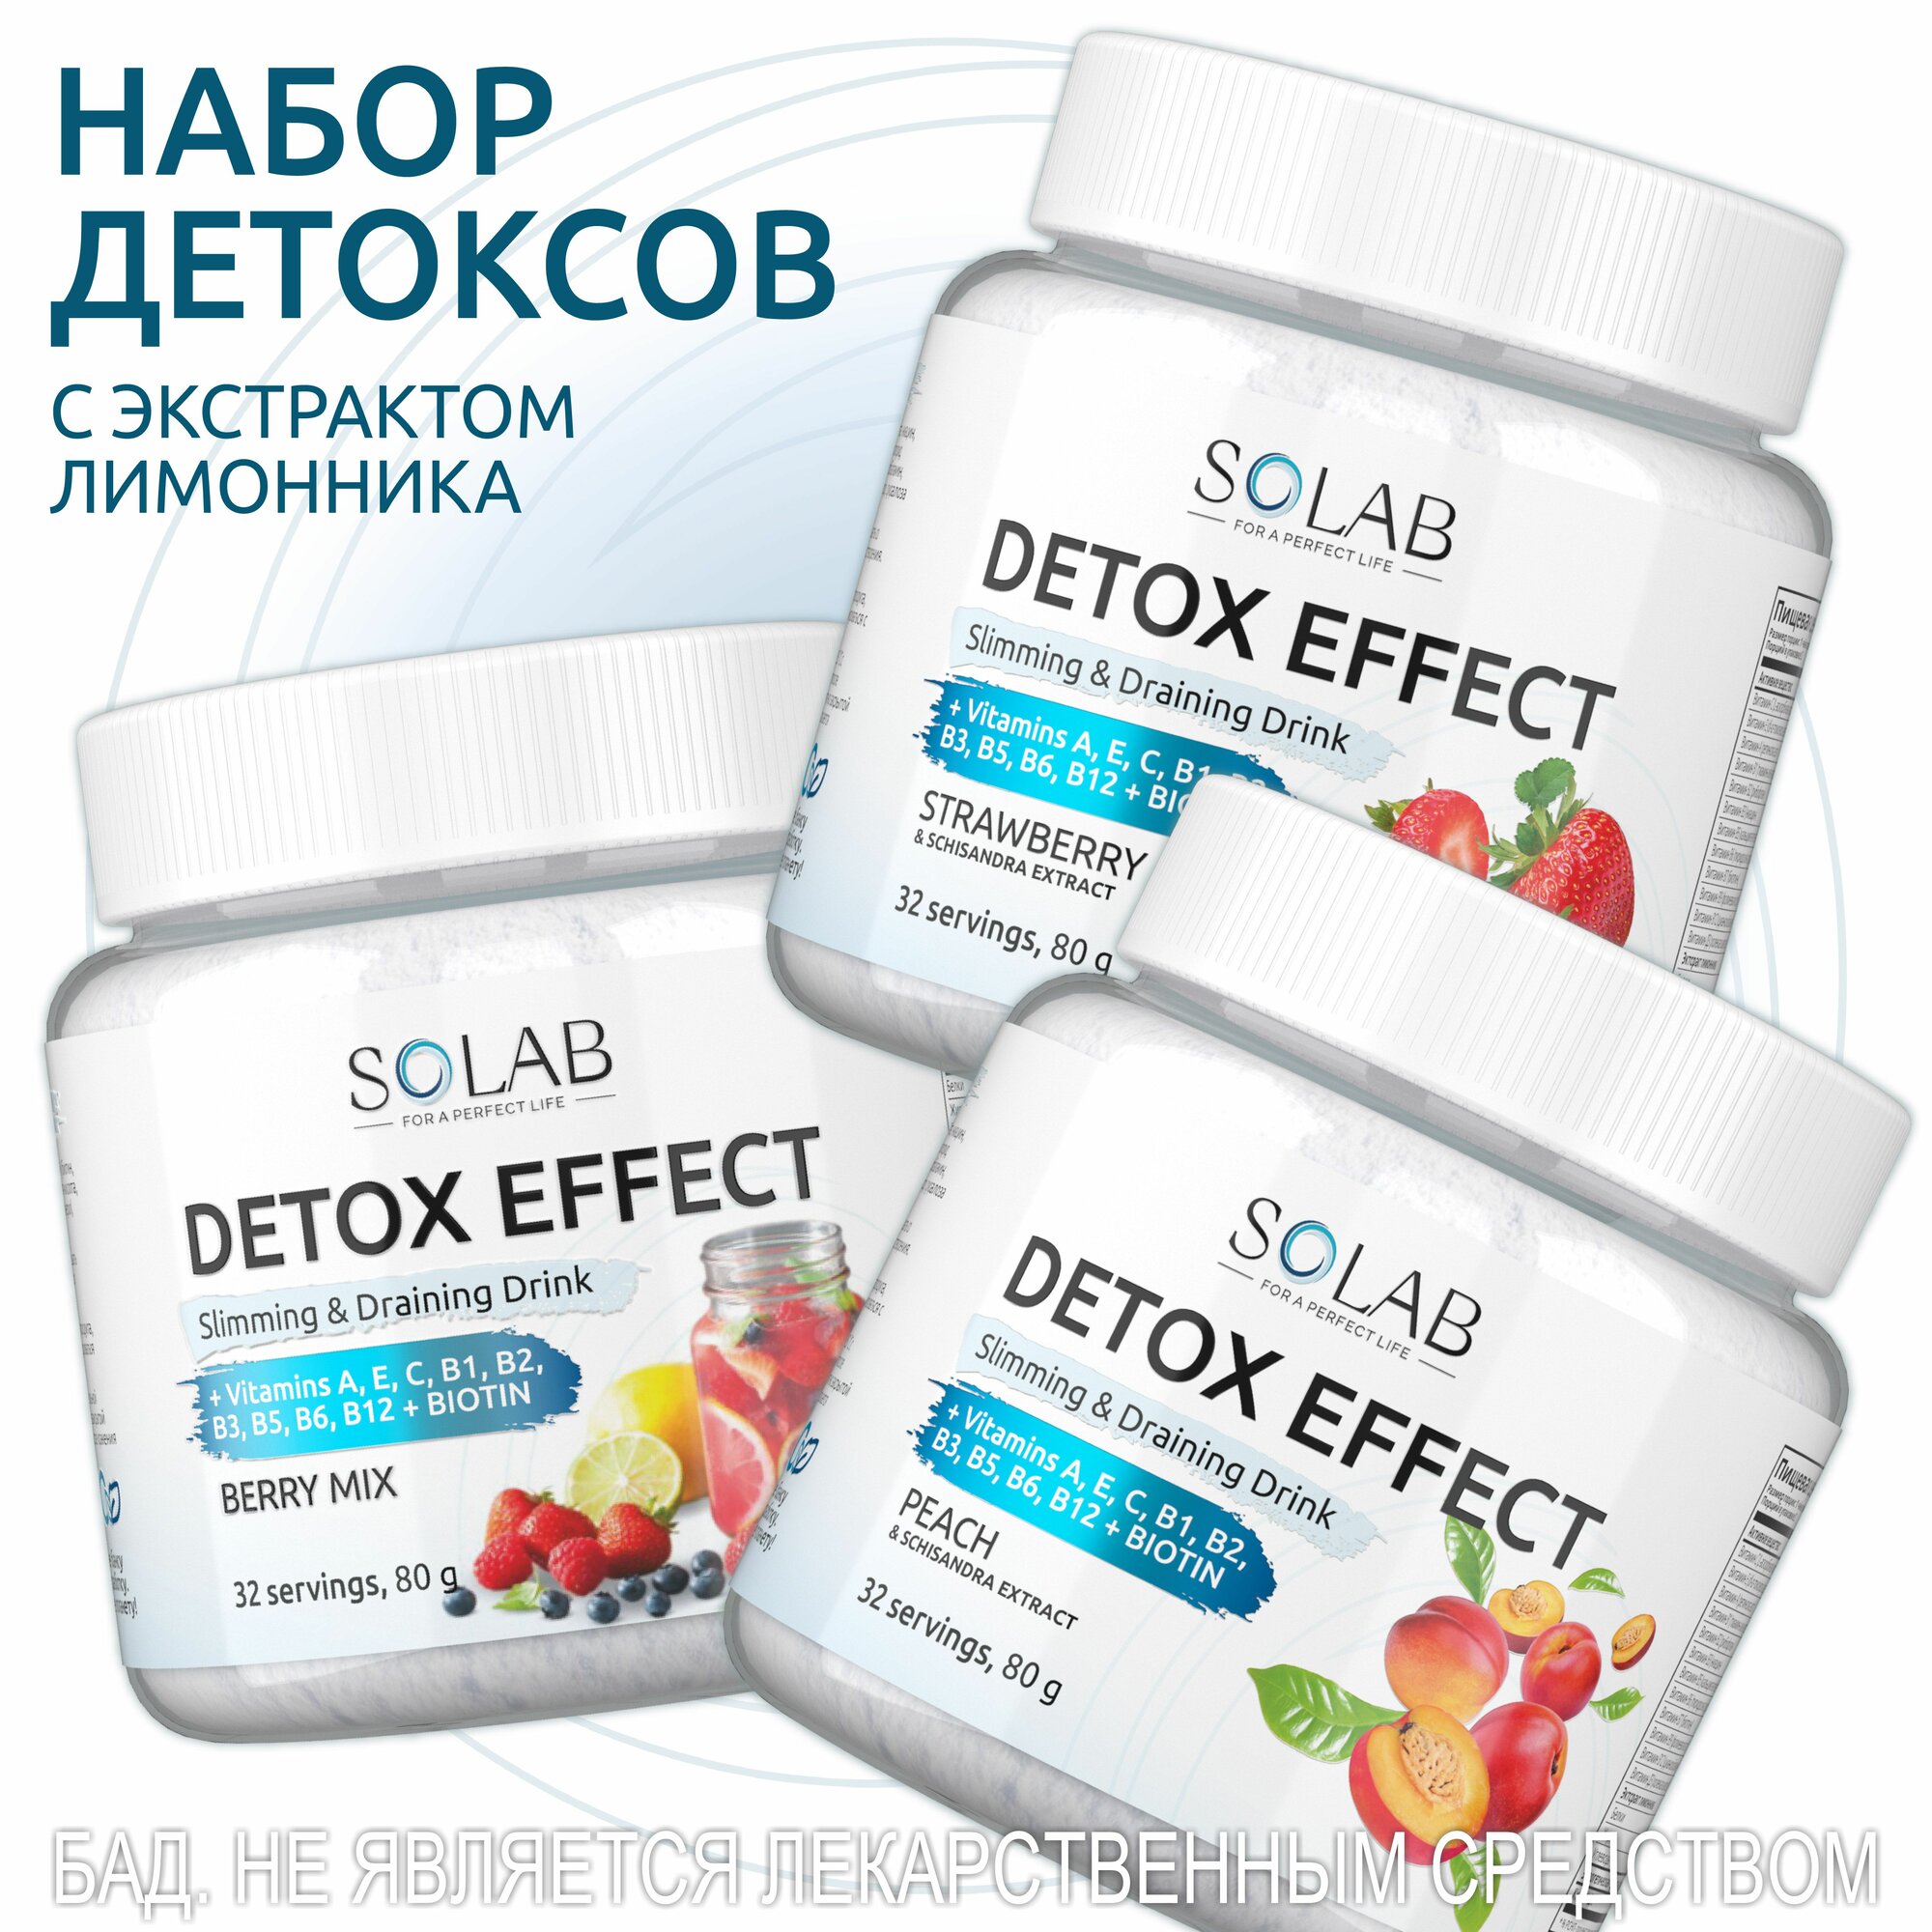 SOLAB Набор Detox Slim Effect - 3 вкуса ассорти с экстрактом лимонника для снижения веса, похудения, очищения